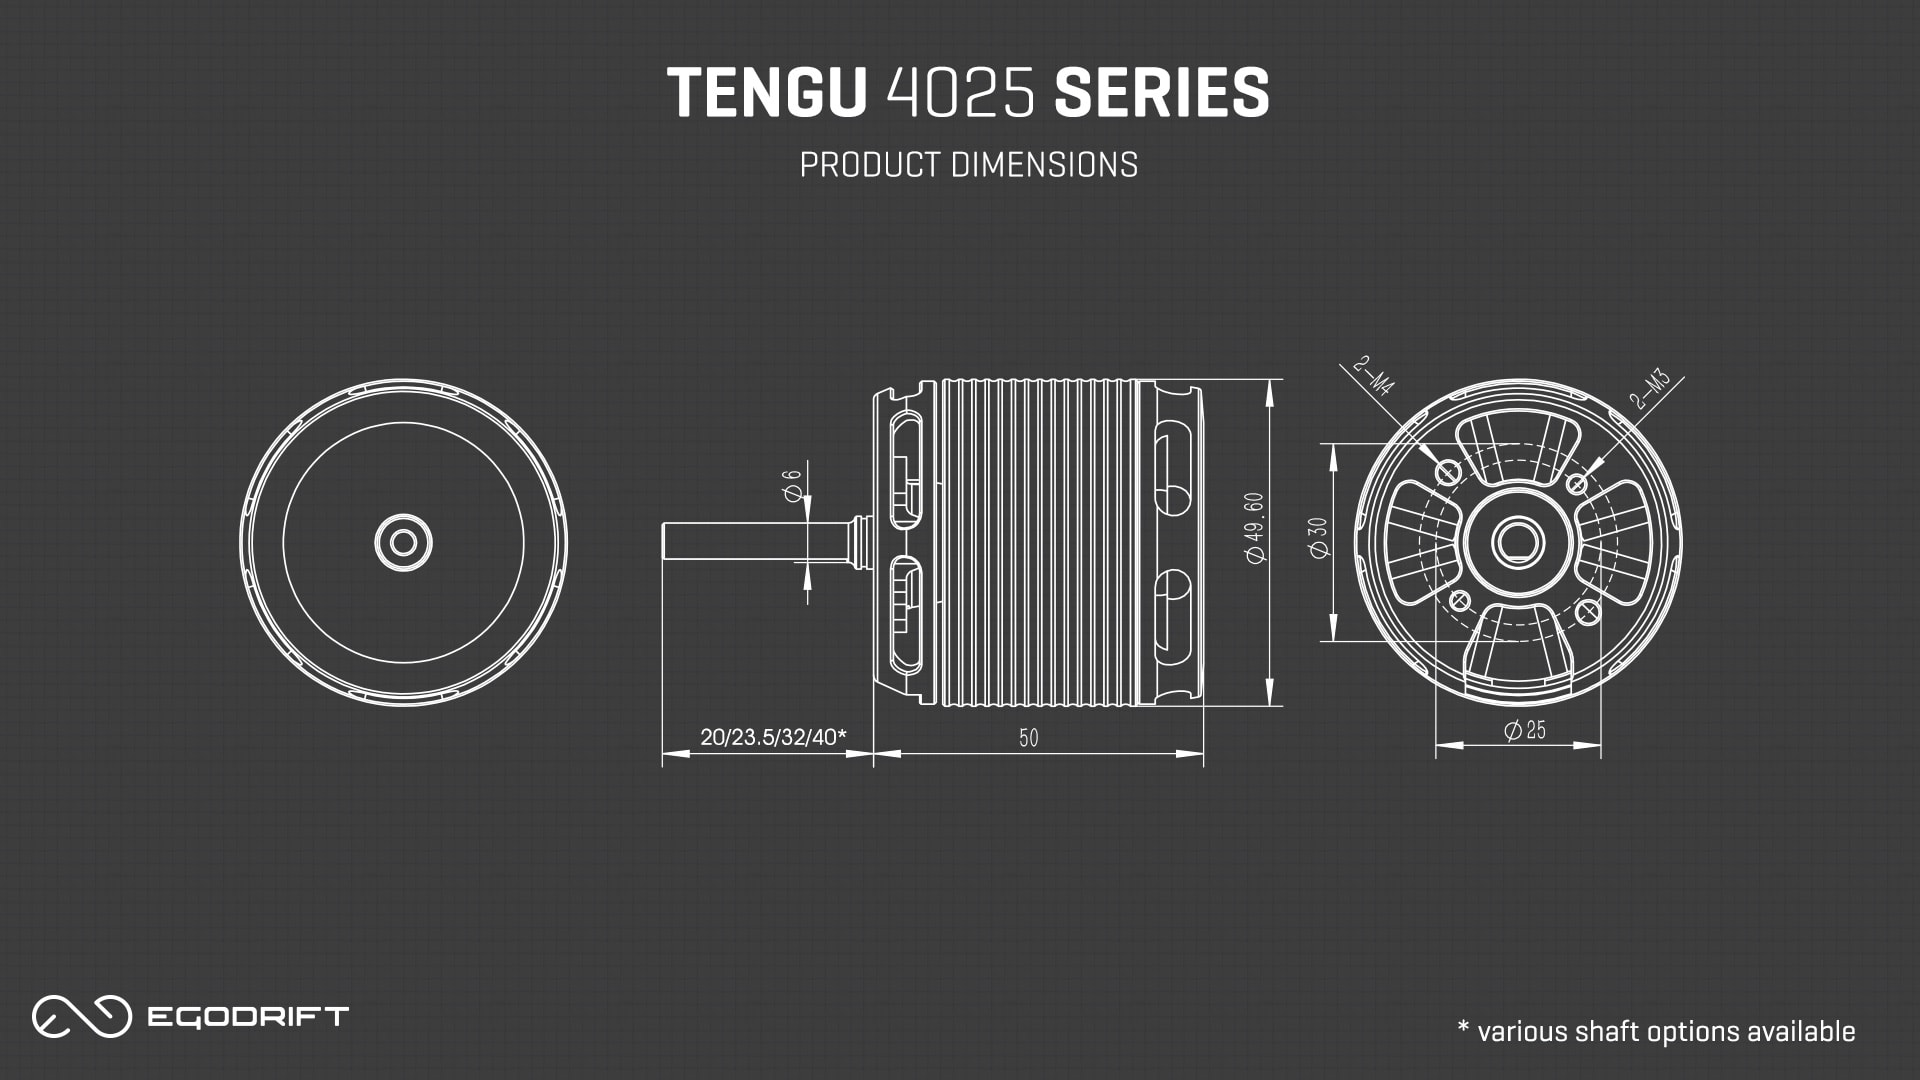 EGODRIFT Tengu 4025 Series Product Dimensions